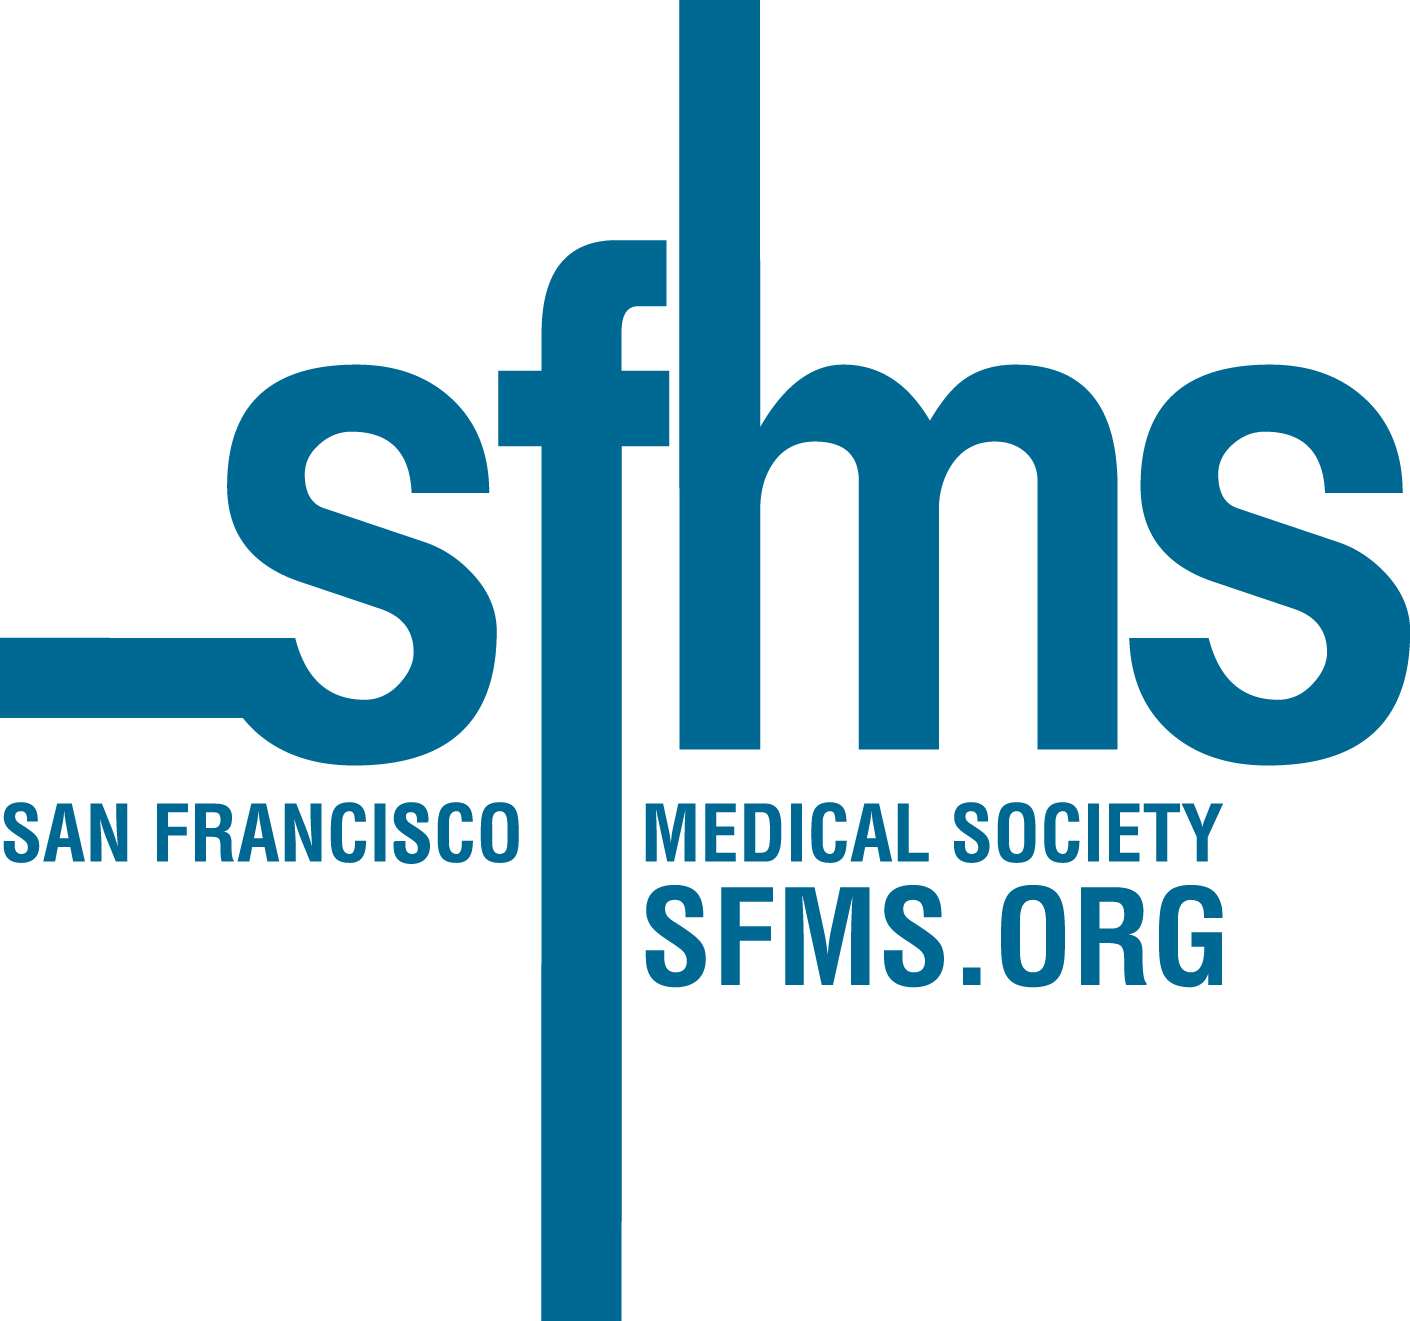 San Francisco Medical Society